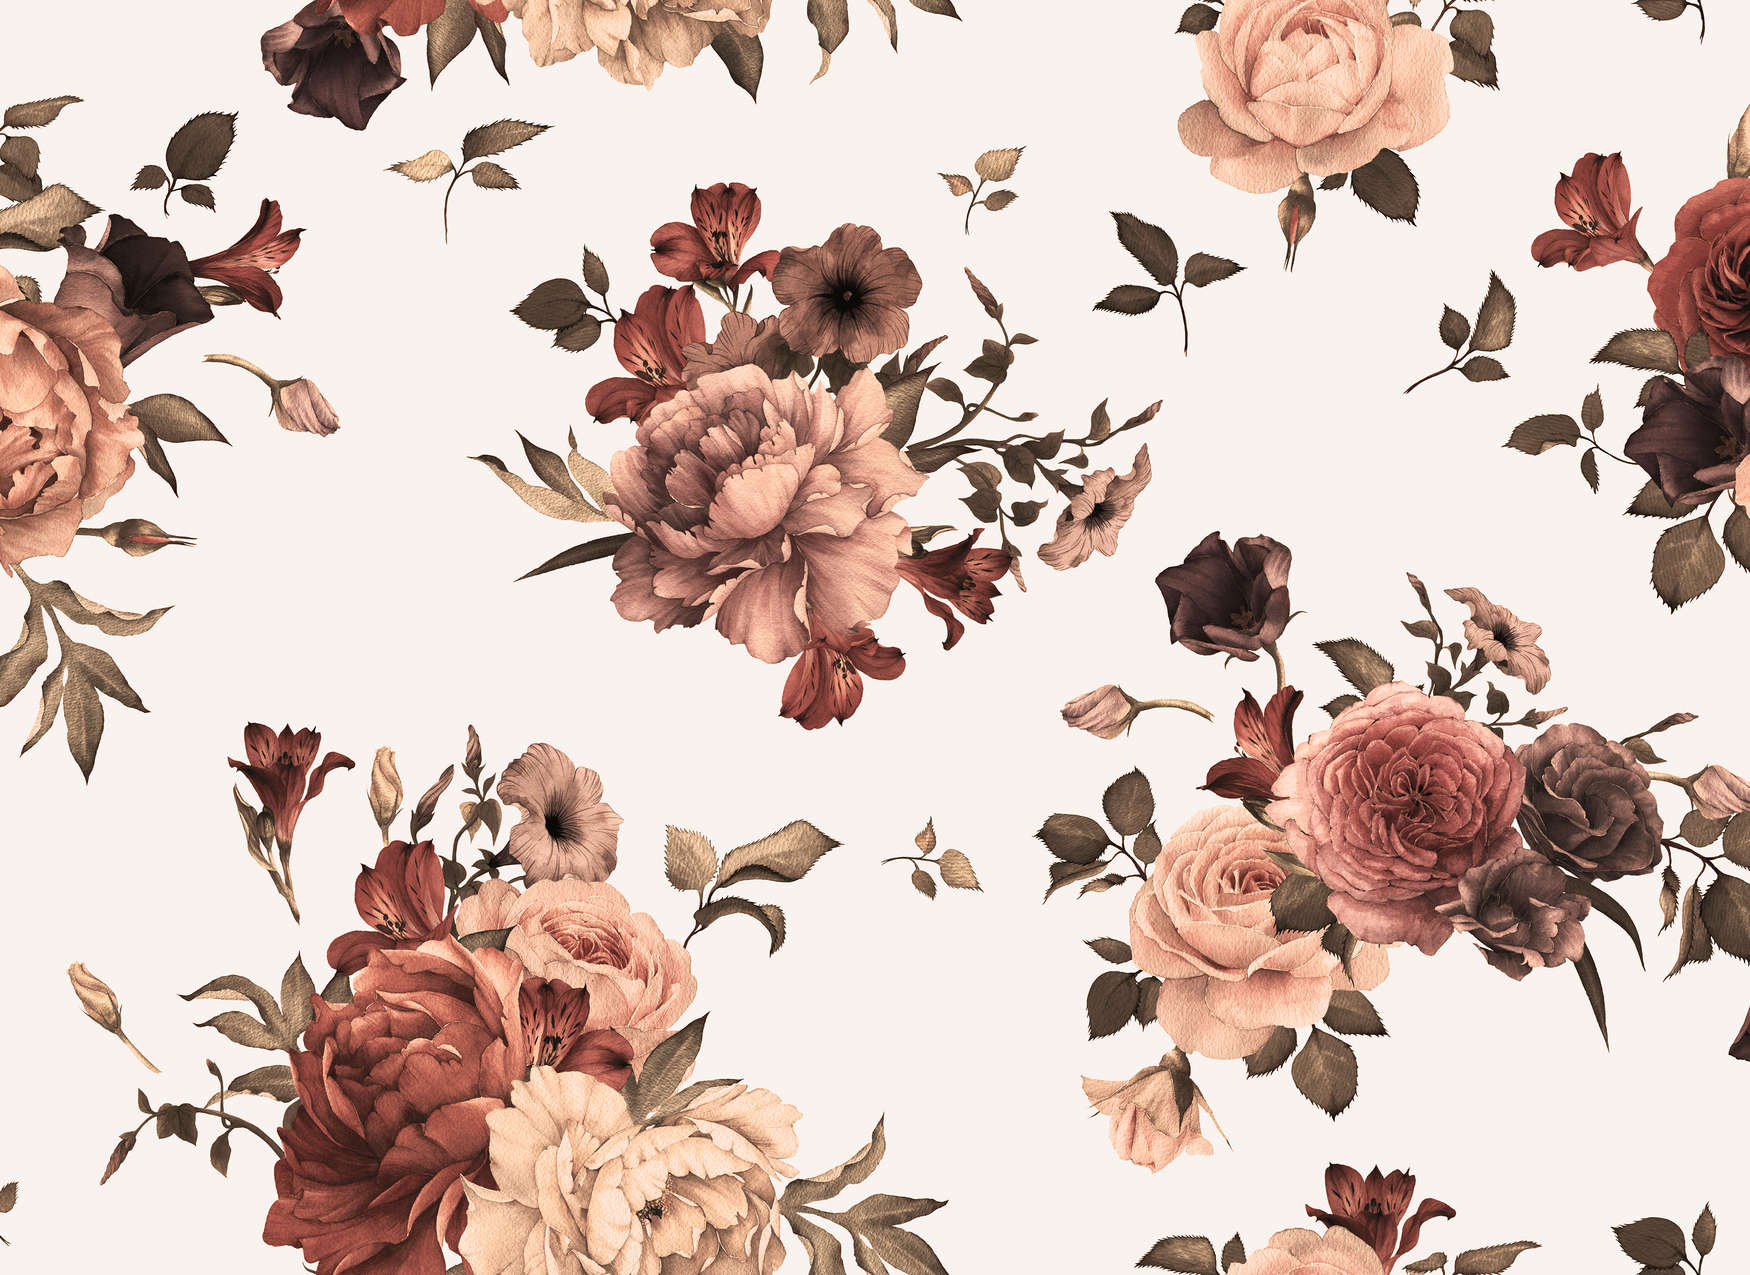             Blumen Fototapete romantisches Design – Rosa, Weiß, Braun
        